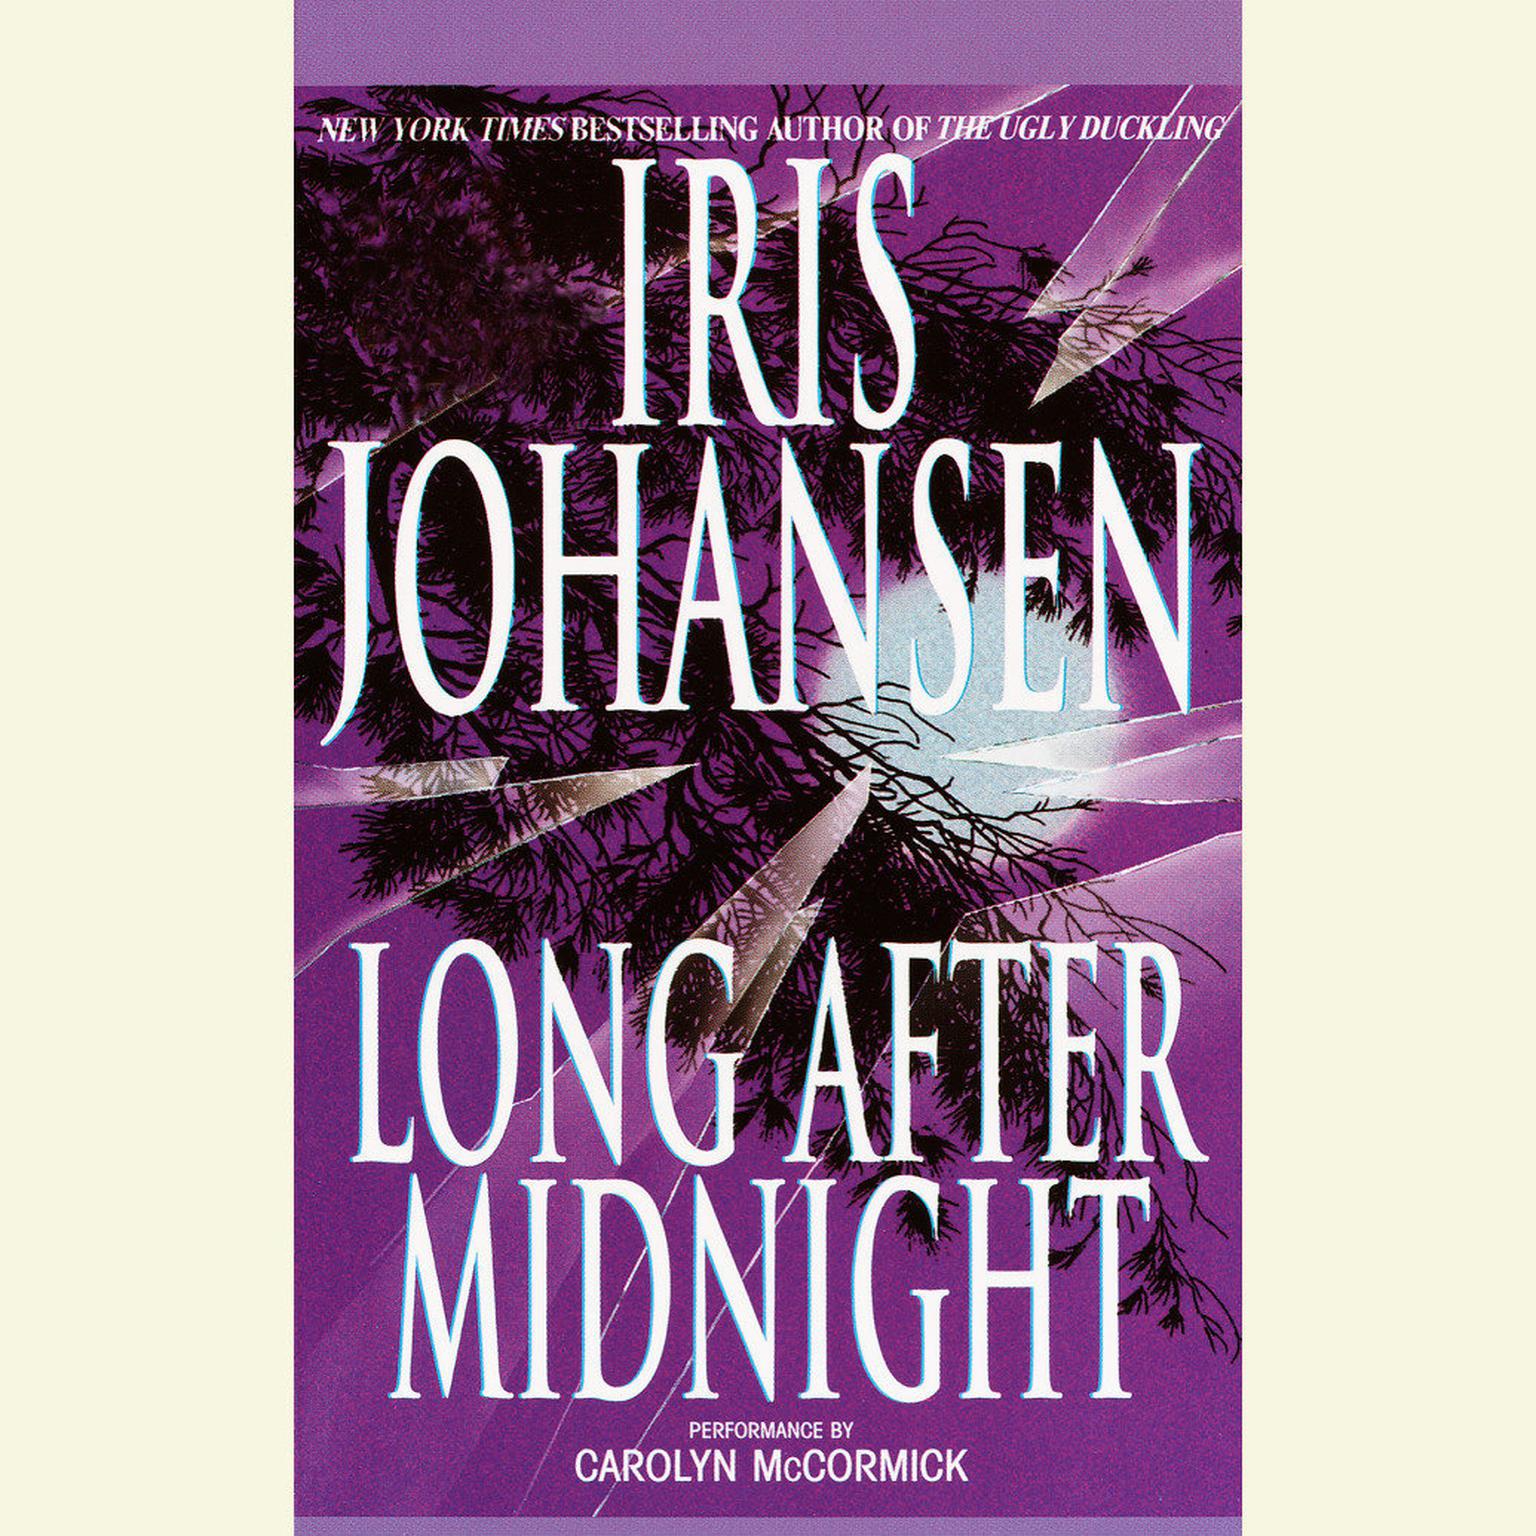 Long After Midnight (Abridged) Audiobook, by Iris Johansen